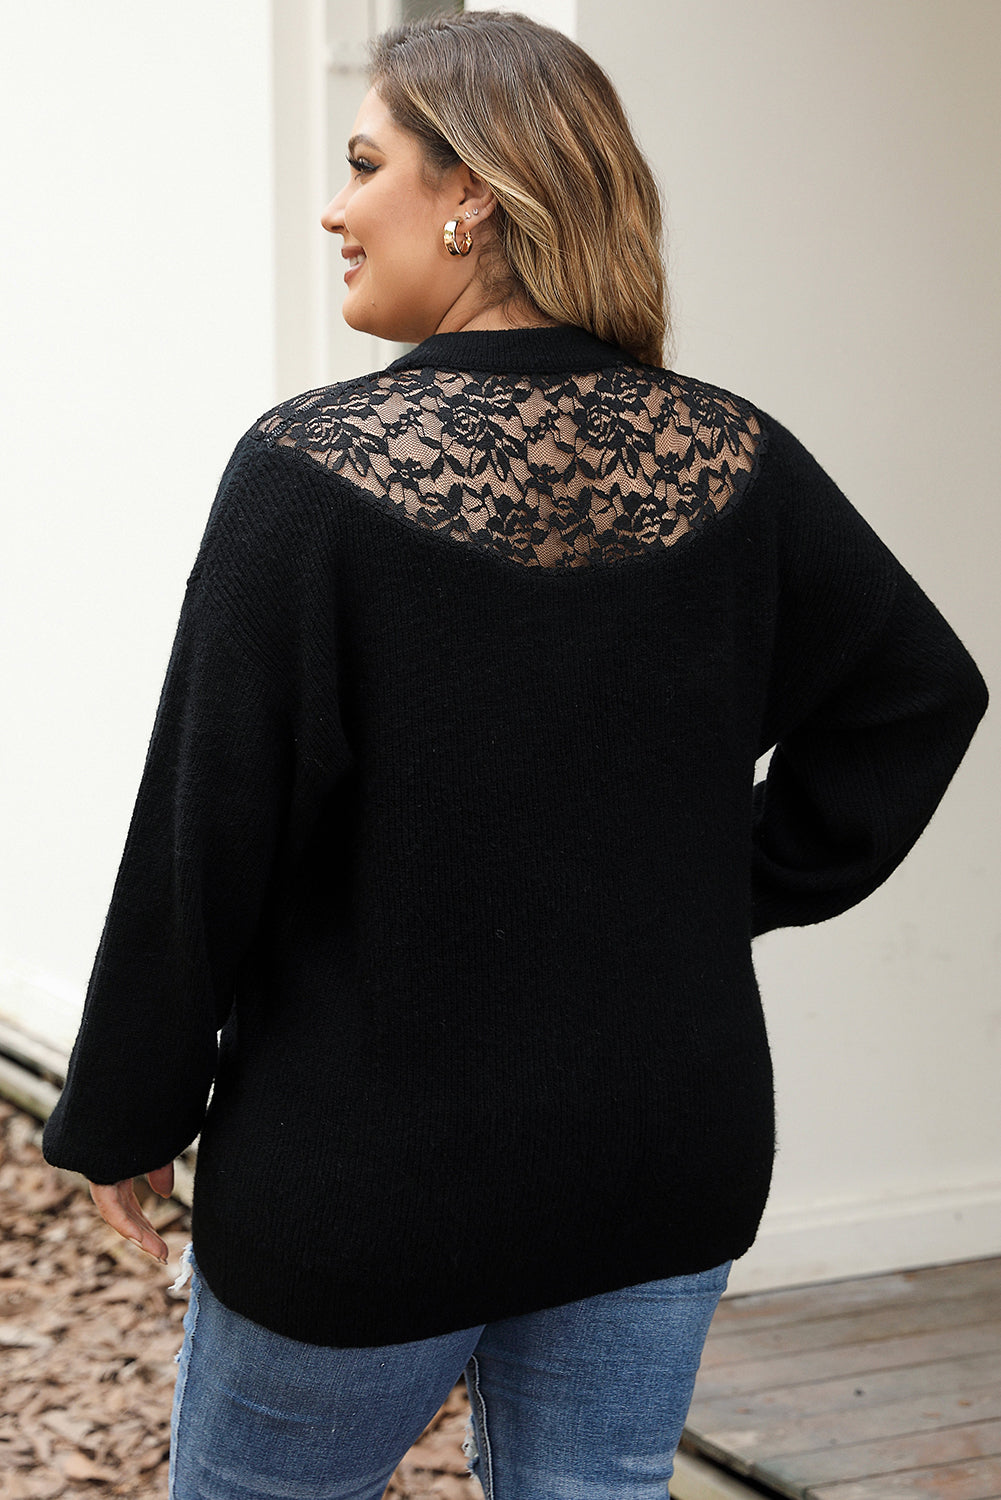 Schwarzer Pullover mit hohem Kragen aus geripptem Strick und Spitzenspleißen in Übergröße